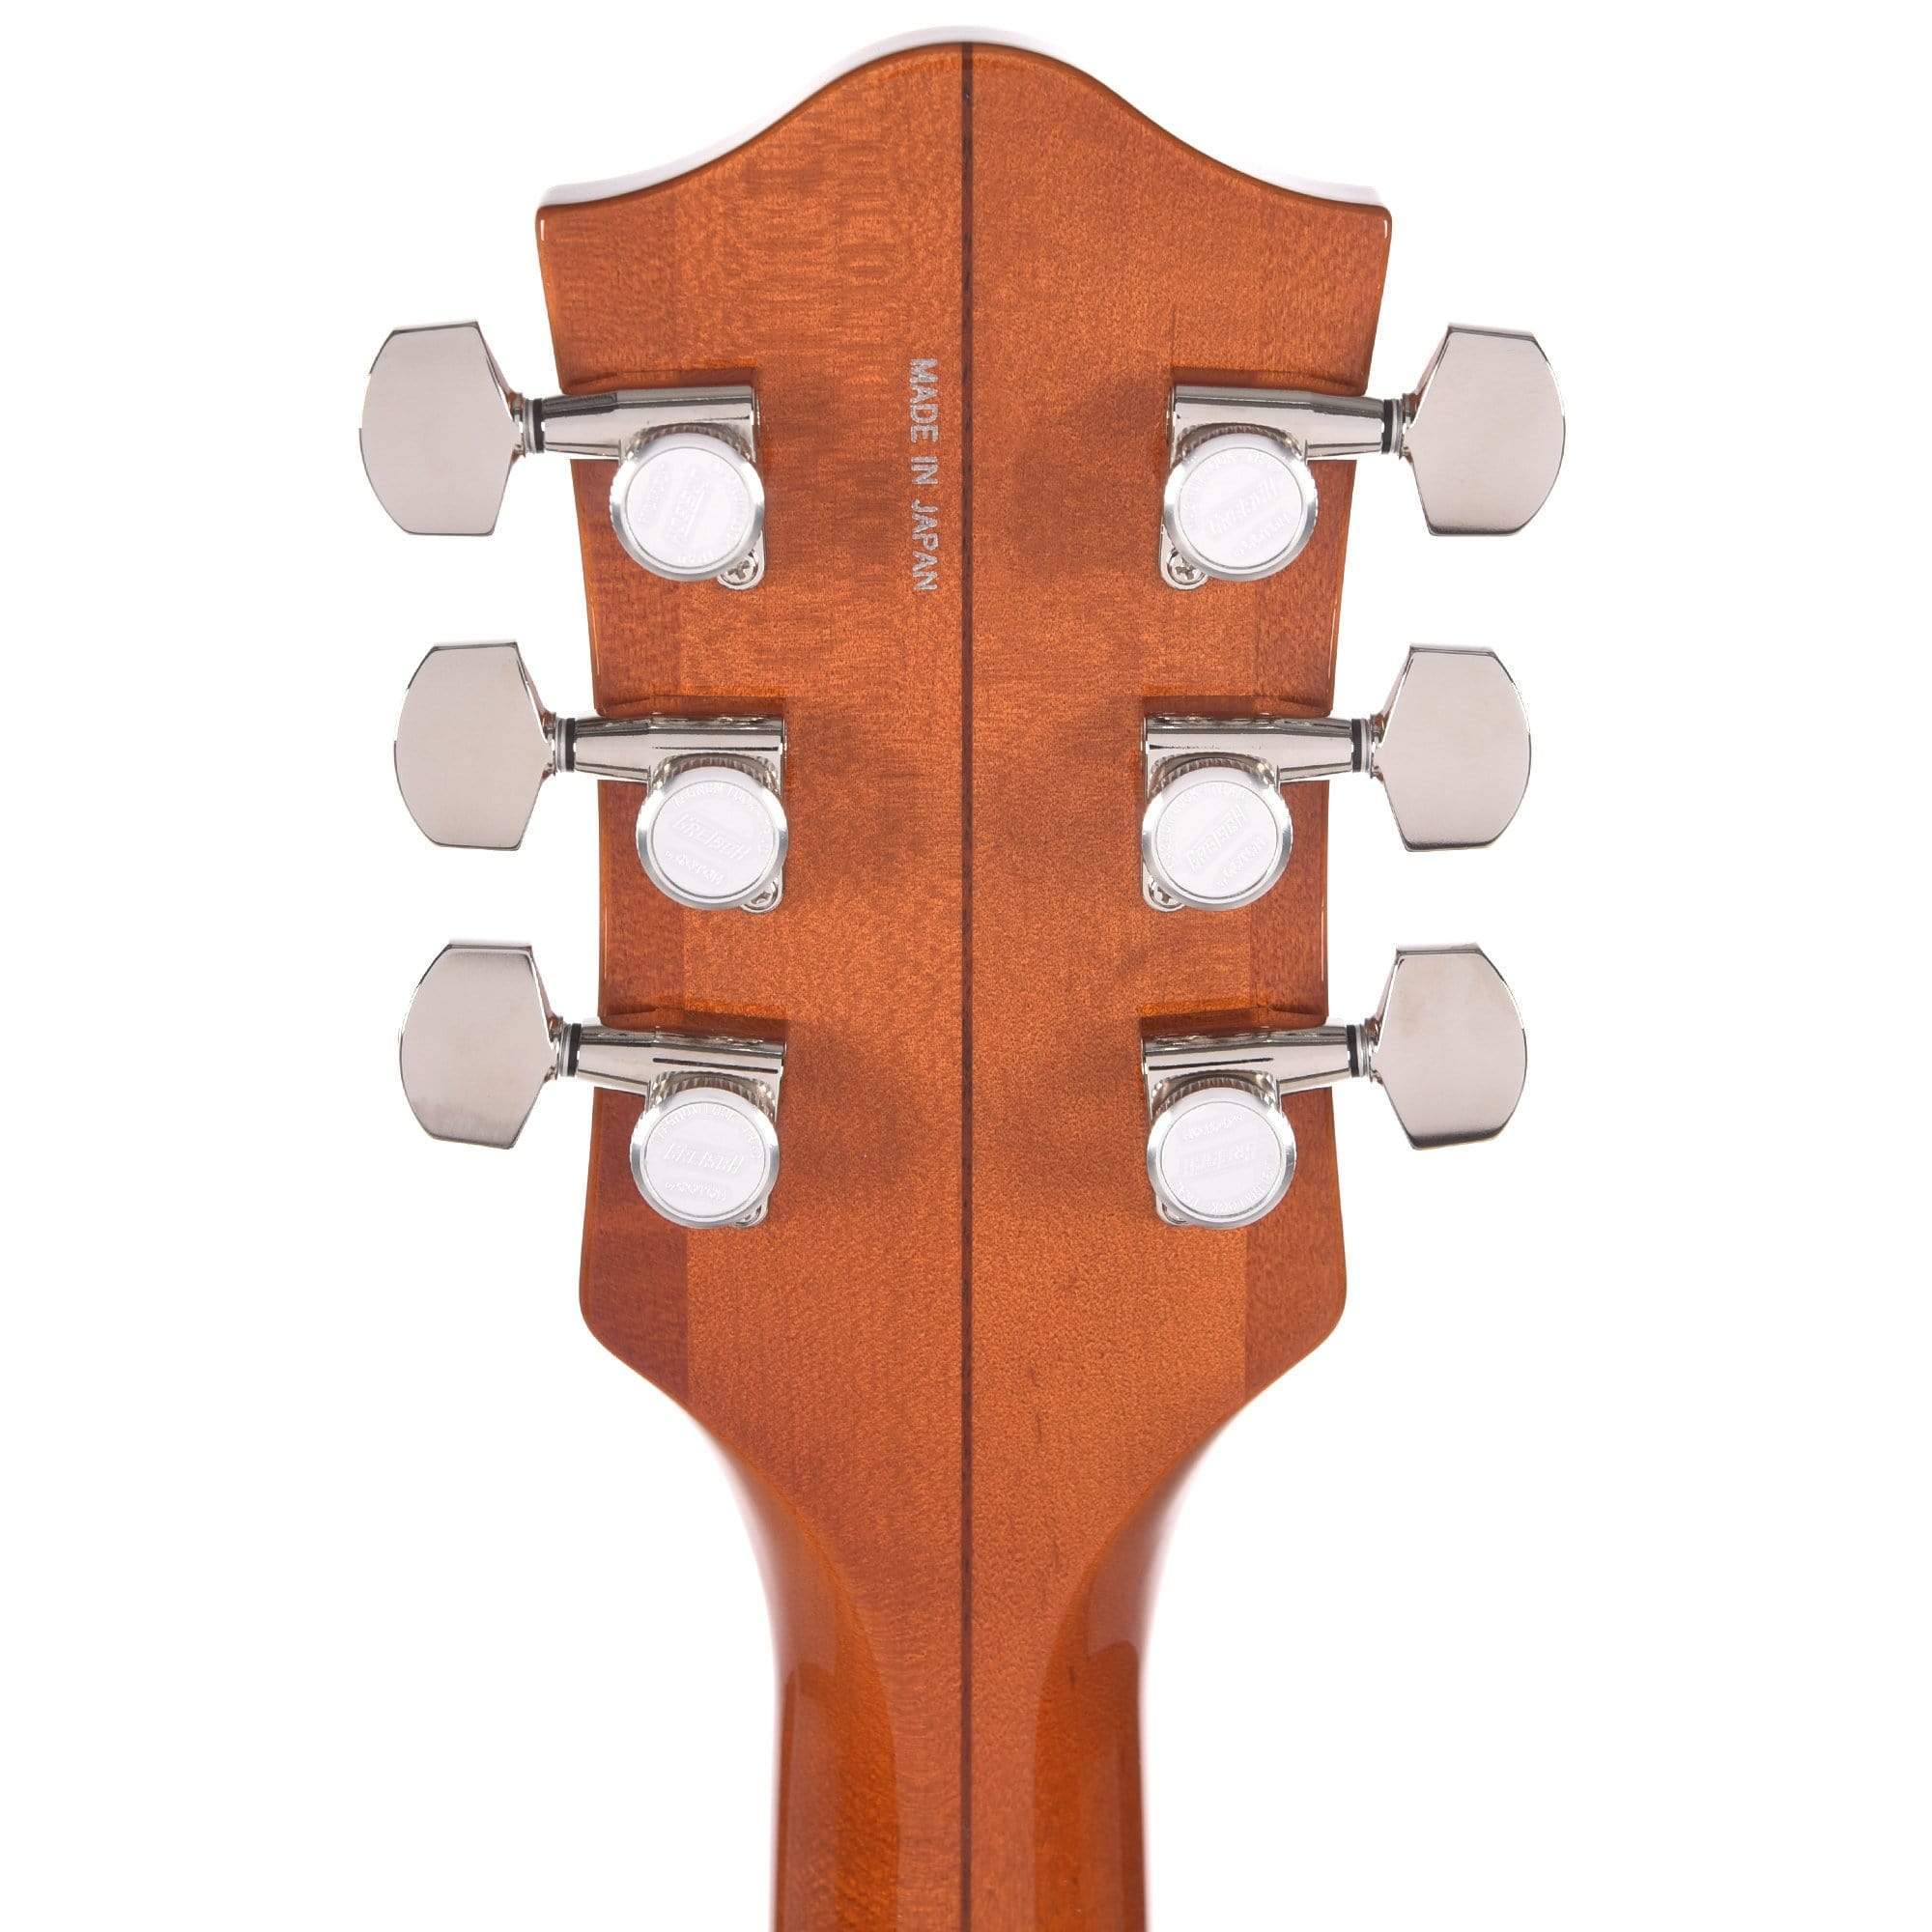 Gretsch G6620T Players Edition Nashville Center Block Electric Guitar - Round-Up Orange